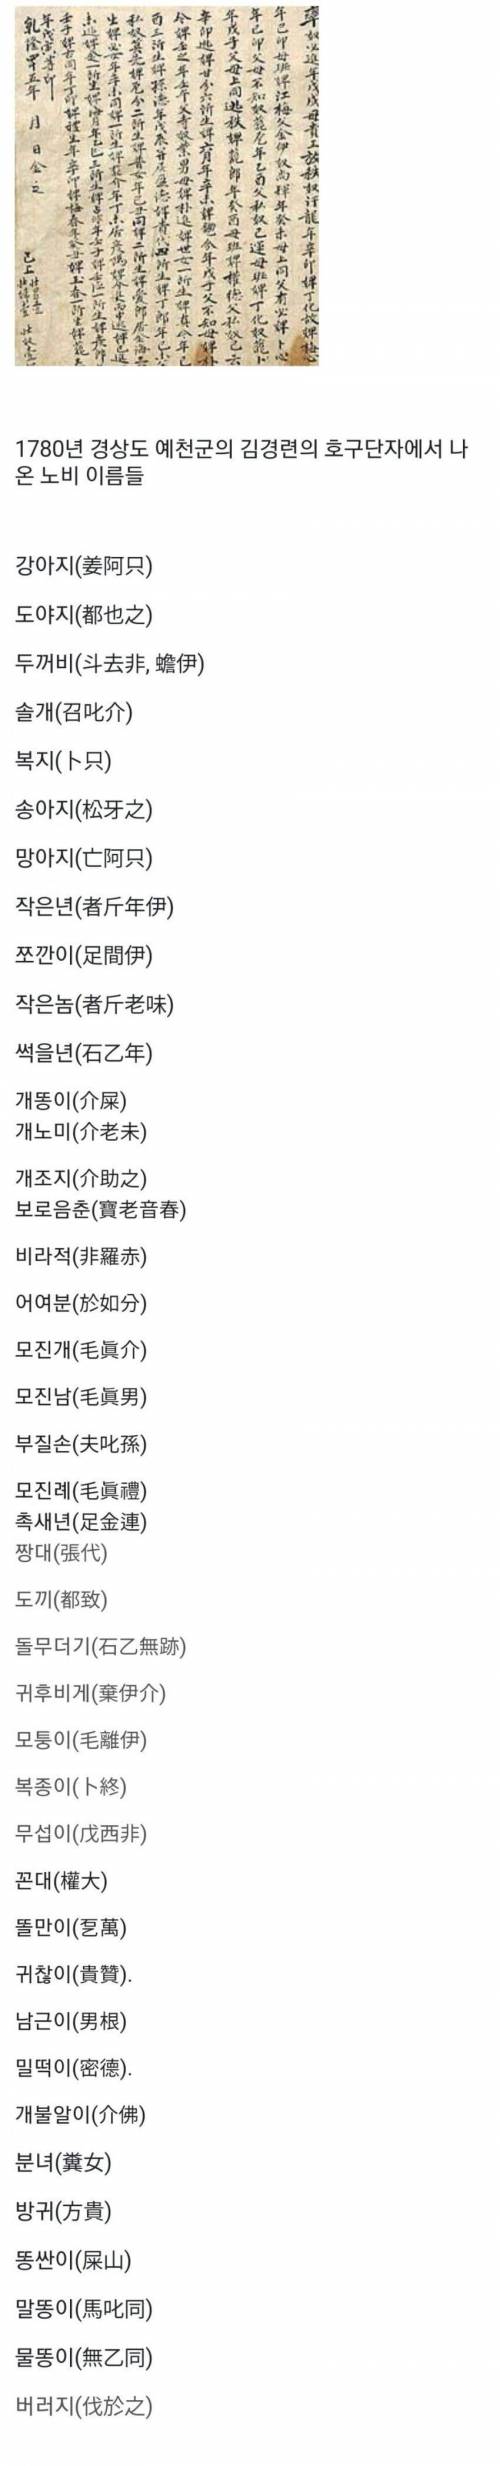 20 최근 발견된 조선시대 노비문서 이름들 목록.jpg